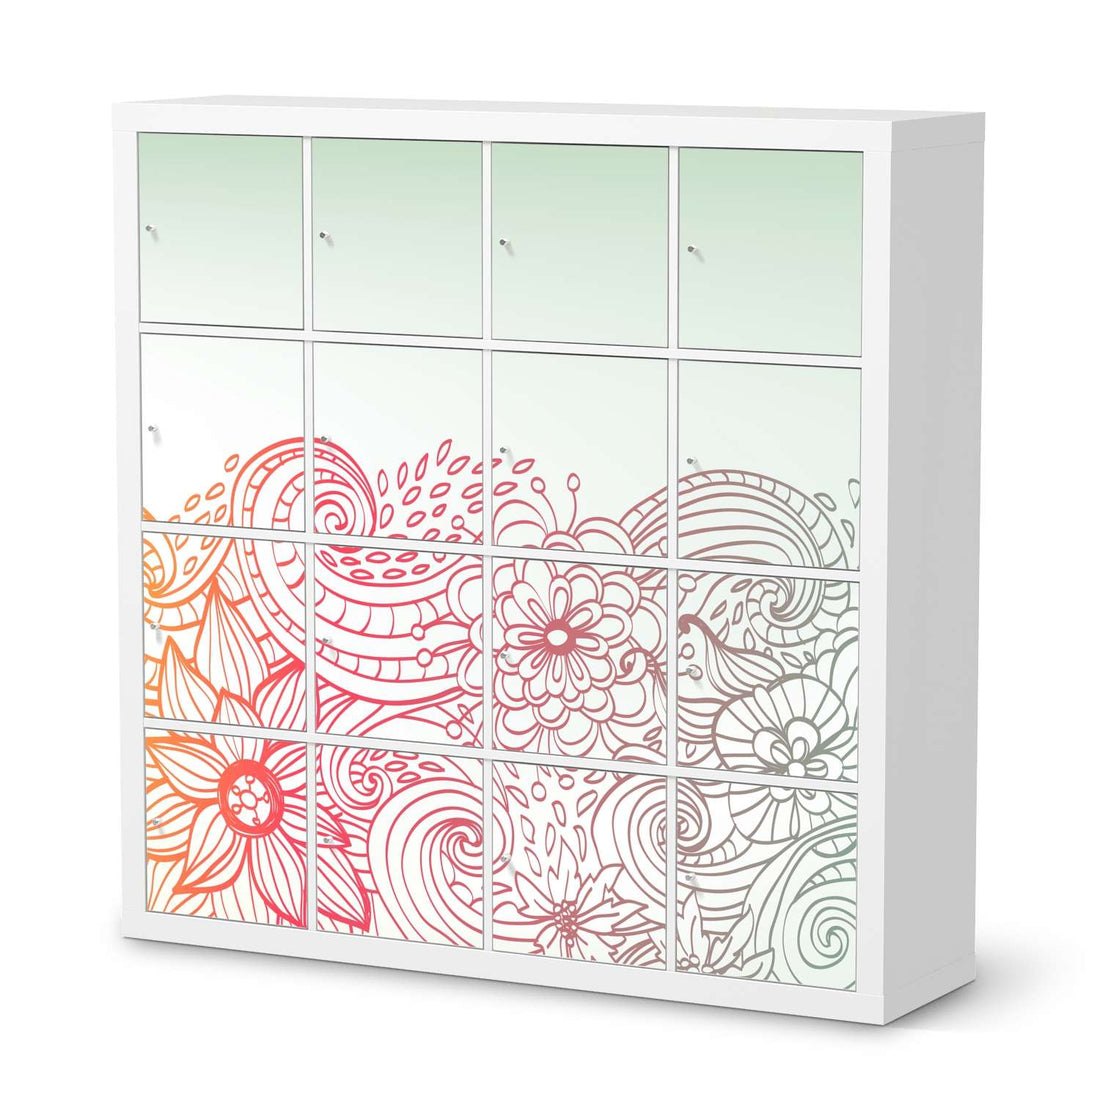 Selbstklebende Folie Floral Doodle - IKEA Expedit Regal 16 Türen  - weiss